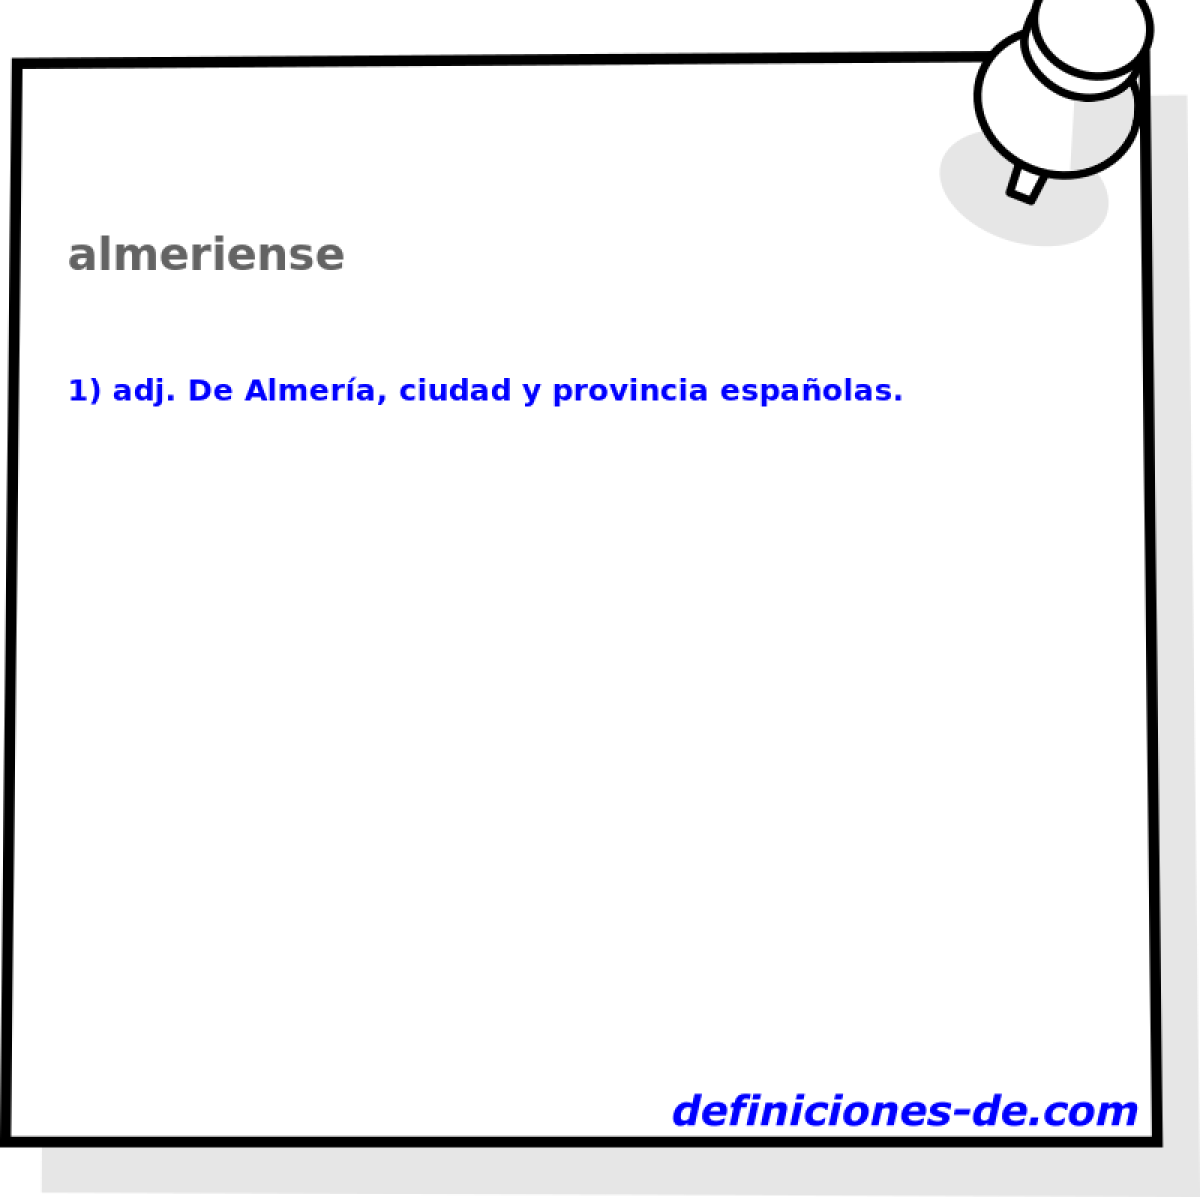 almeriense 